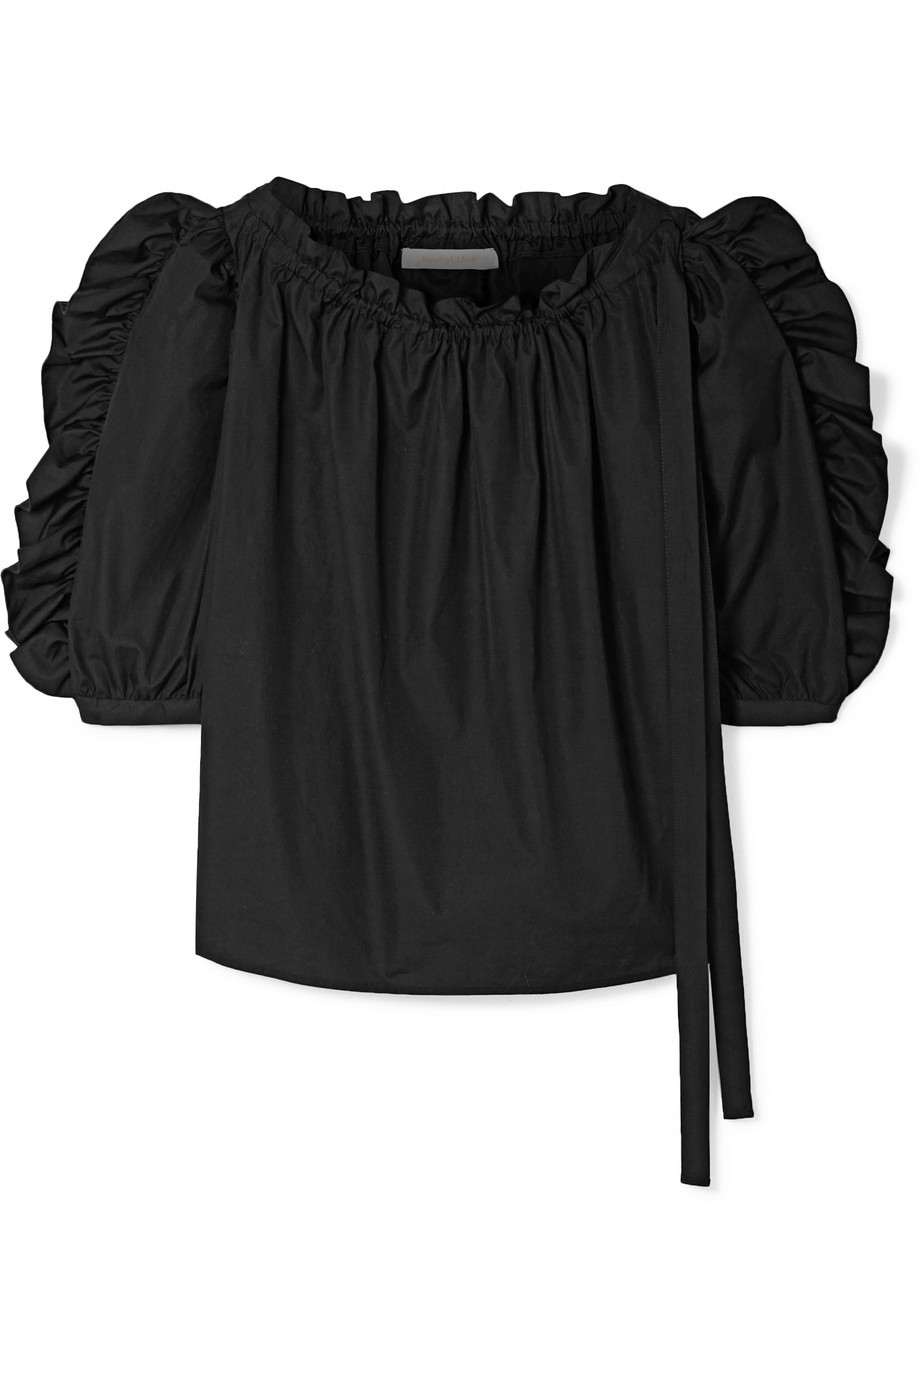 Blusa negra de See by Chlo (220 euros).